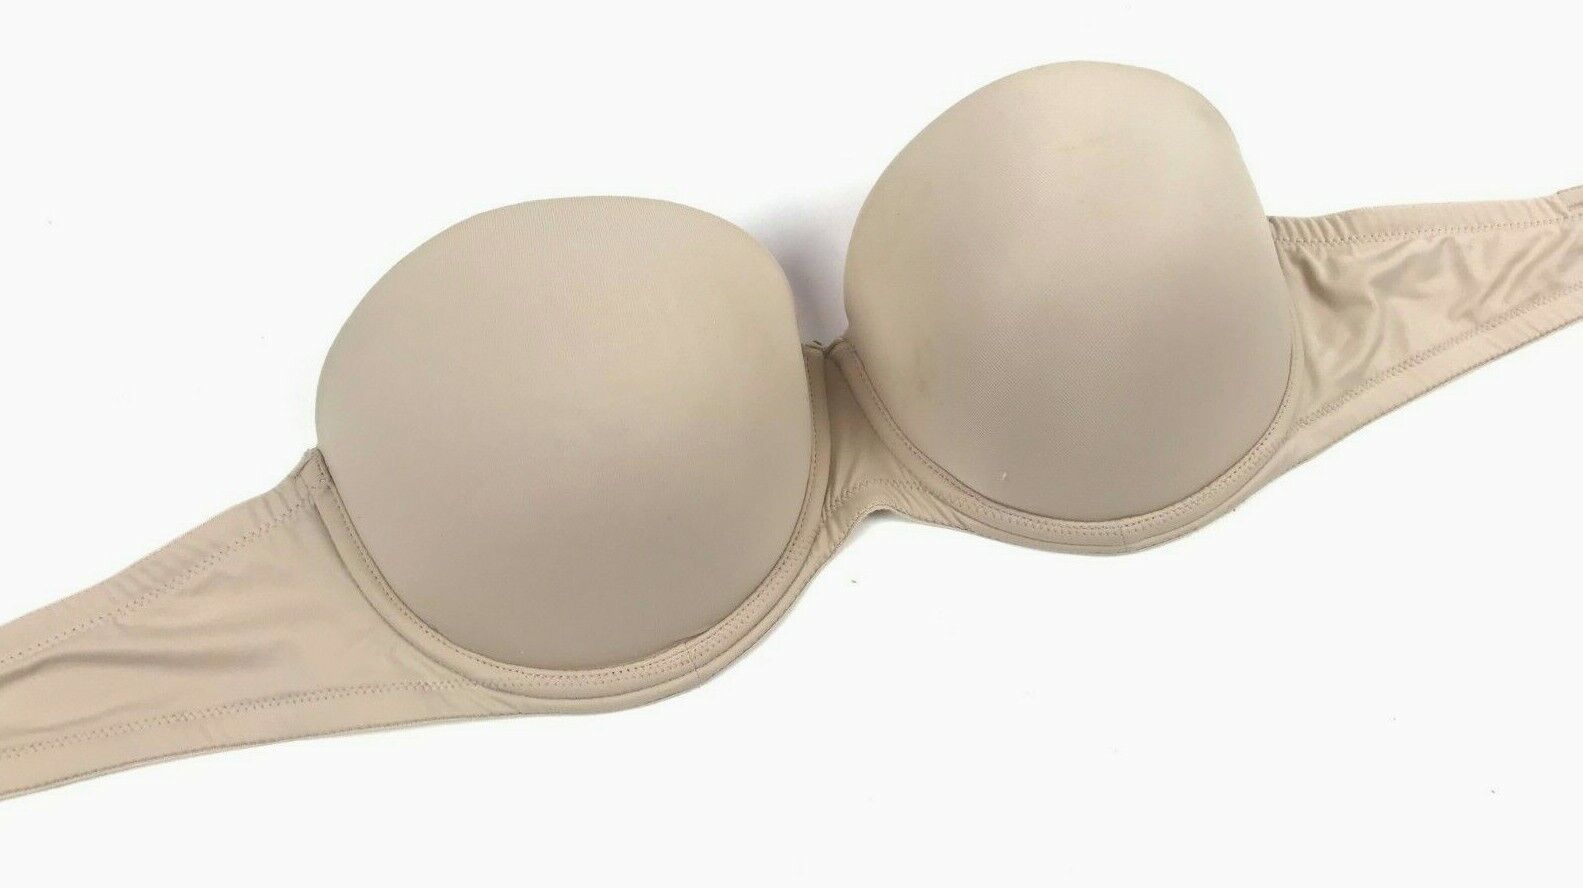 Victoria's Secret, Intimates & Sleepwear, Victorias Secret Bra32ddd Nude  Beige Padded Push Up Underwire Back Closure